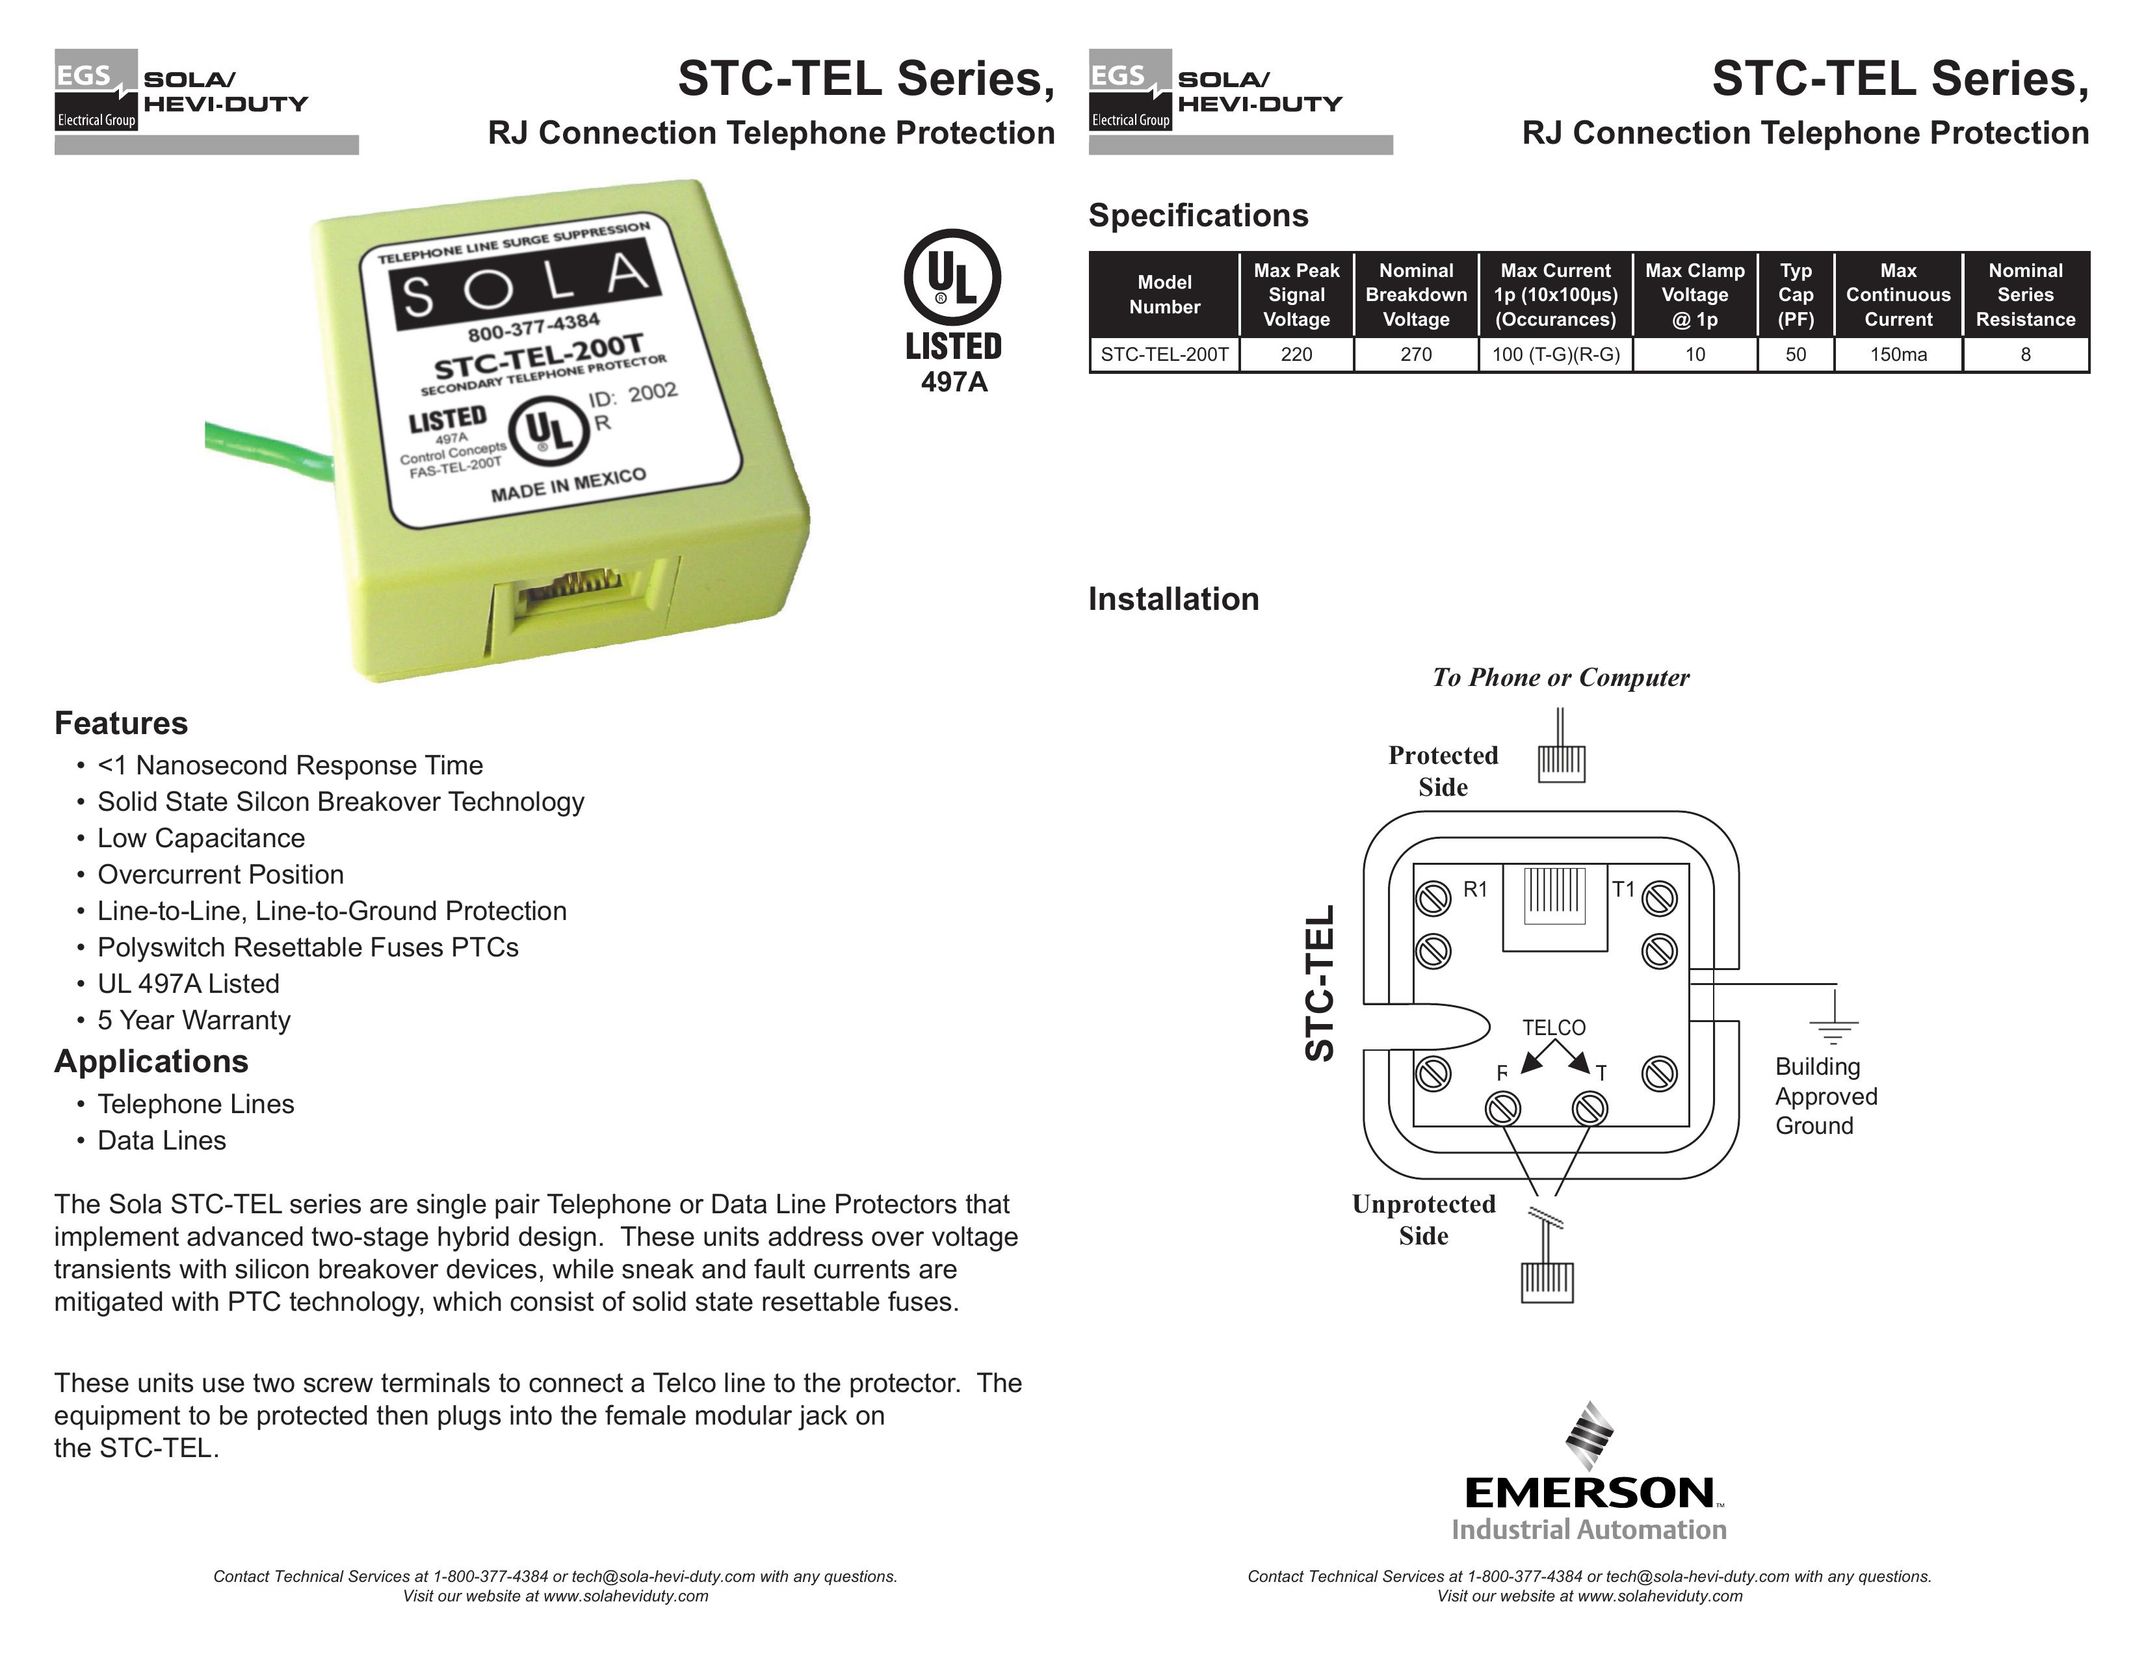 Emerson STC-TEL 200T Printer Accessories User Manual